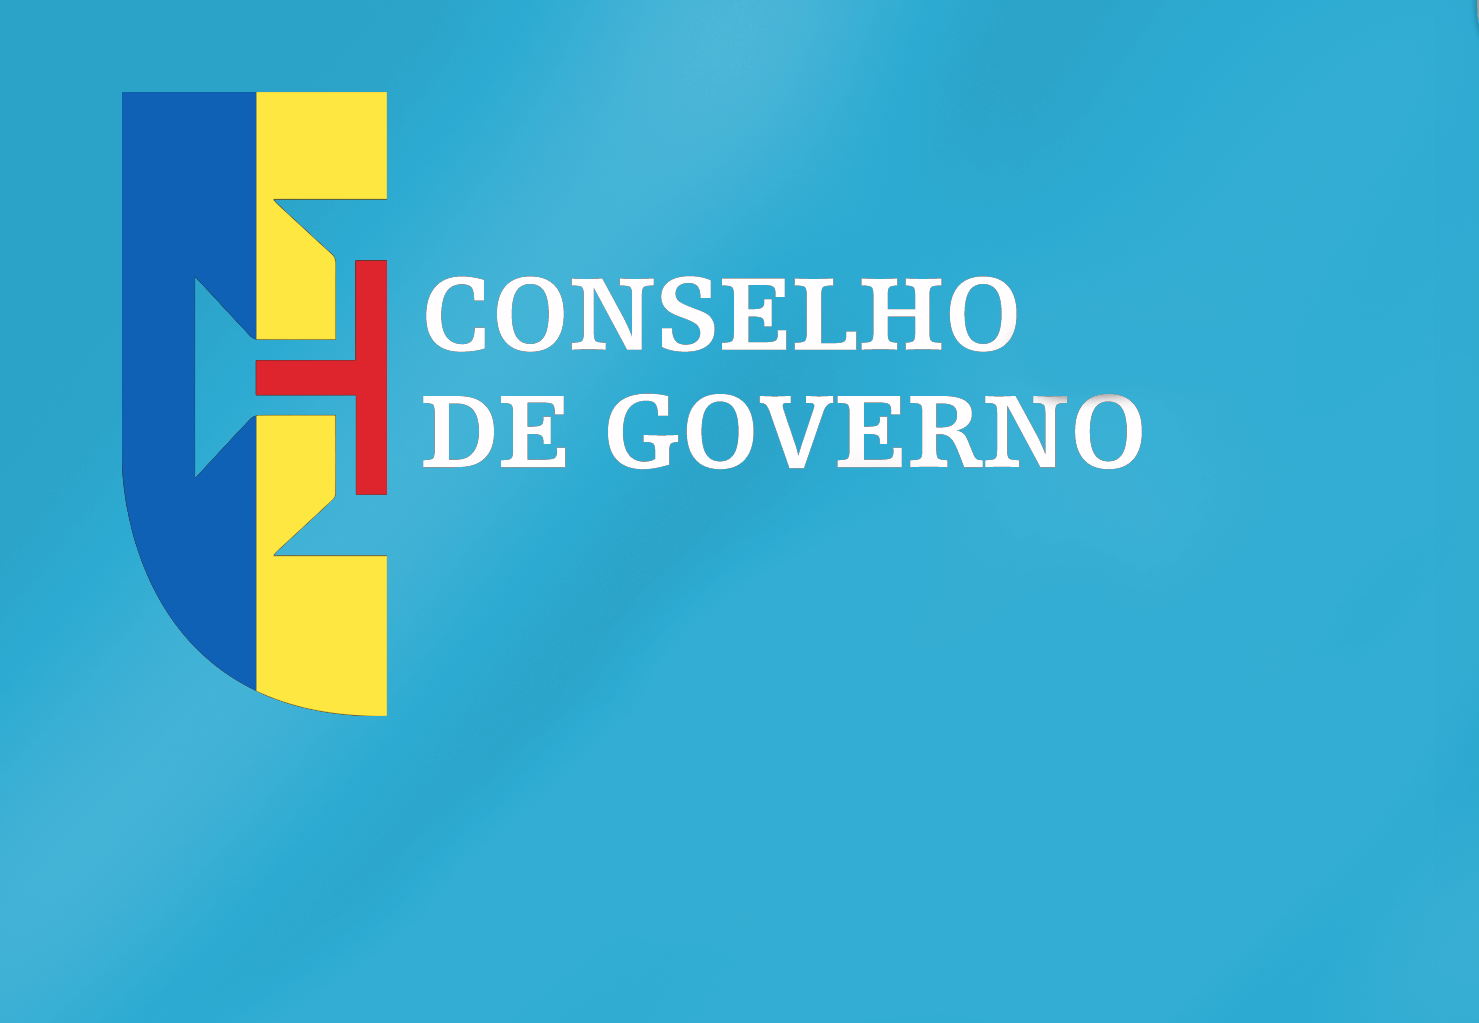 Conclusões Conselho de Governo - 28 de abril de 2022